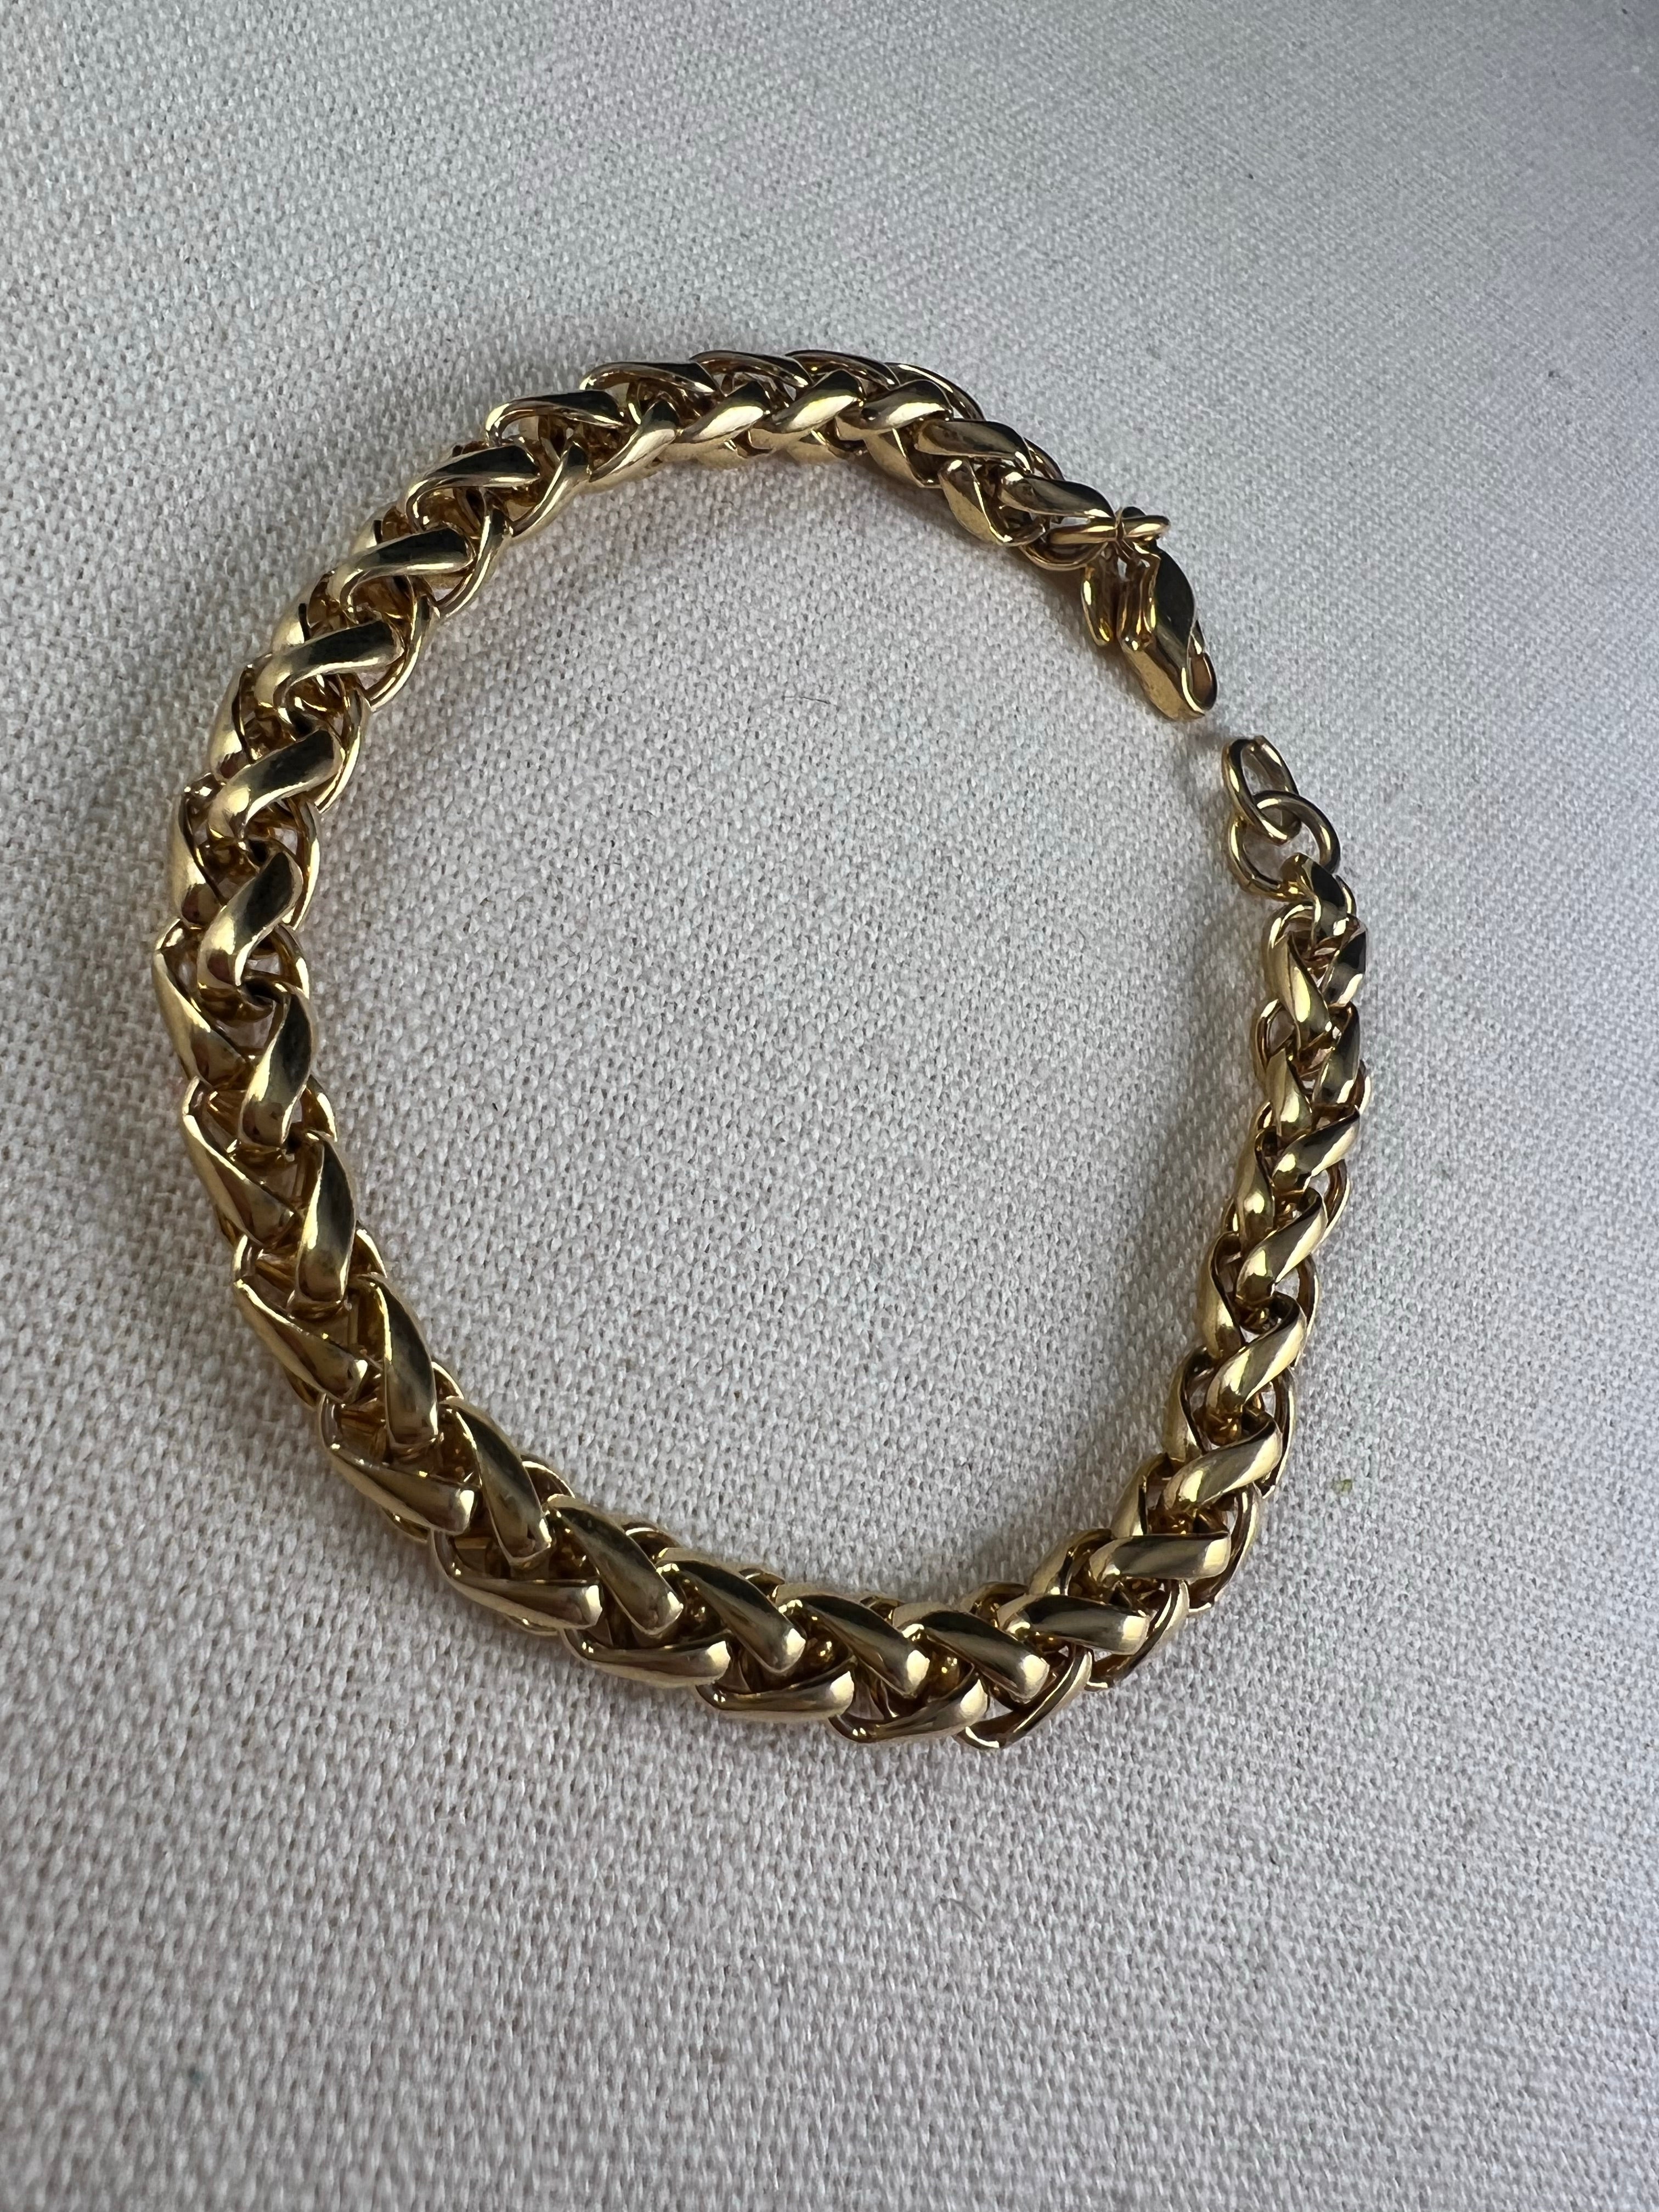 Vintage Monet Gold Bracelet